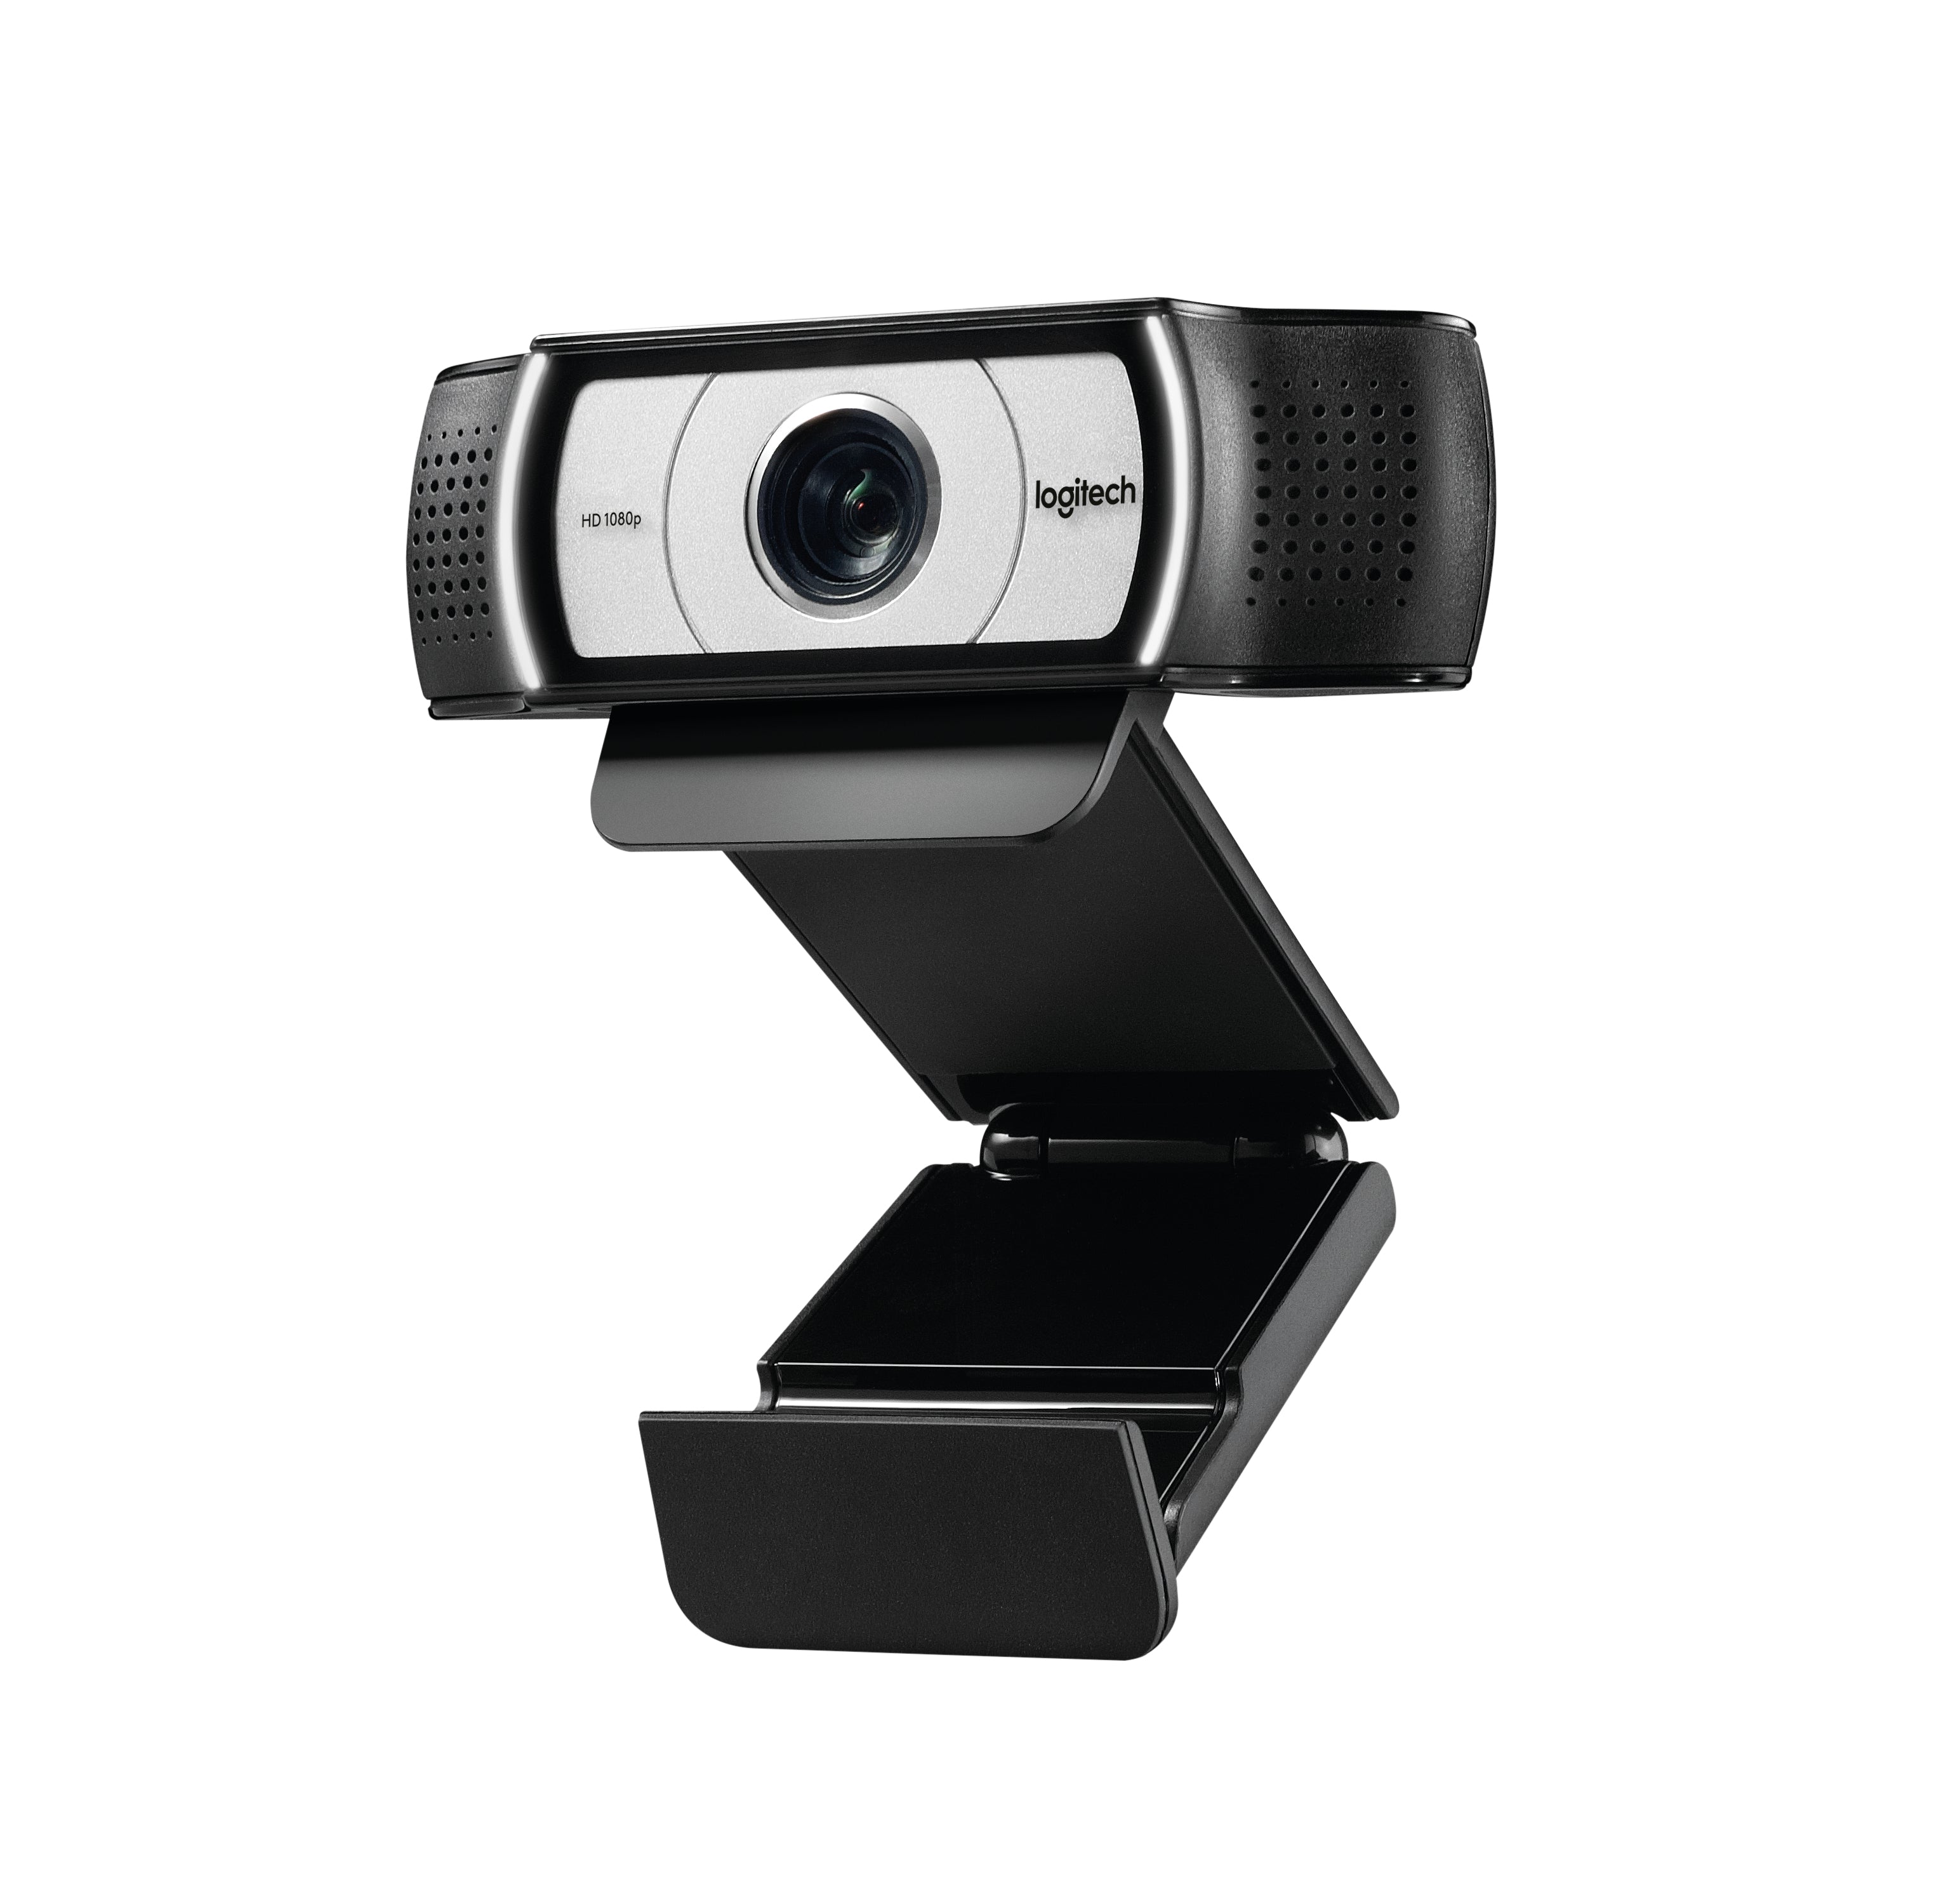 Logitech Webcam C930 1920 x 1080 Webkamera mit Gewinde